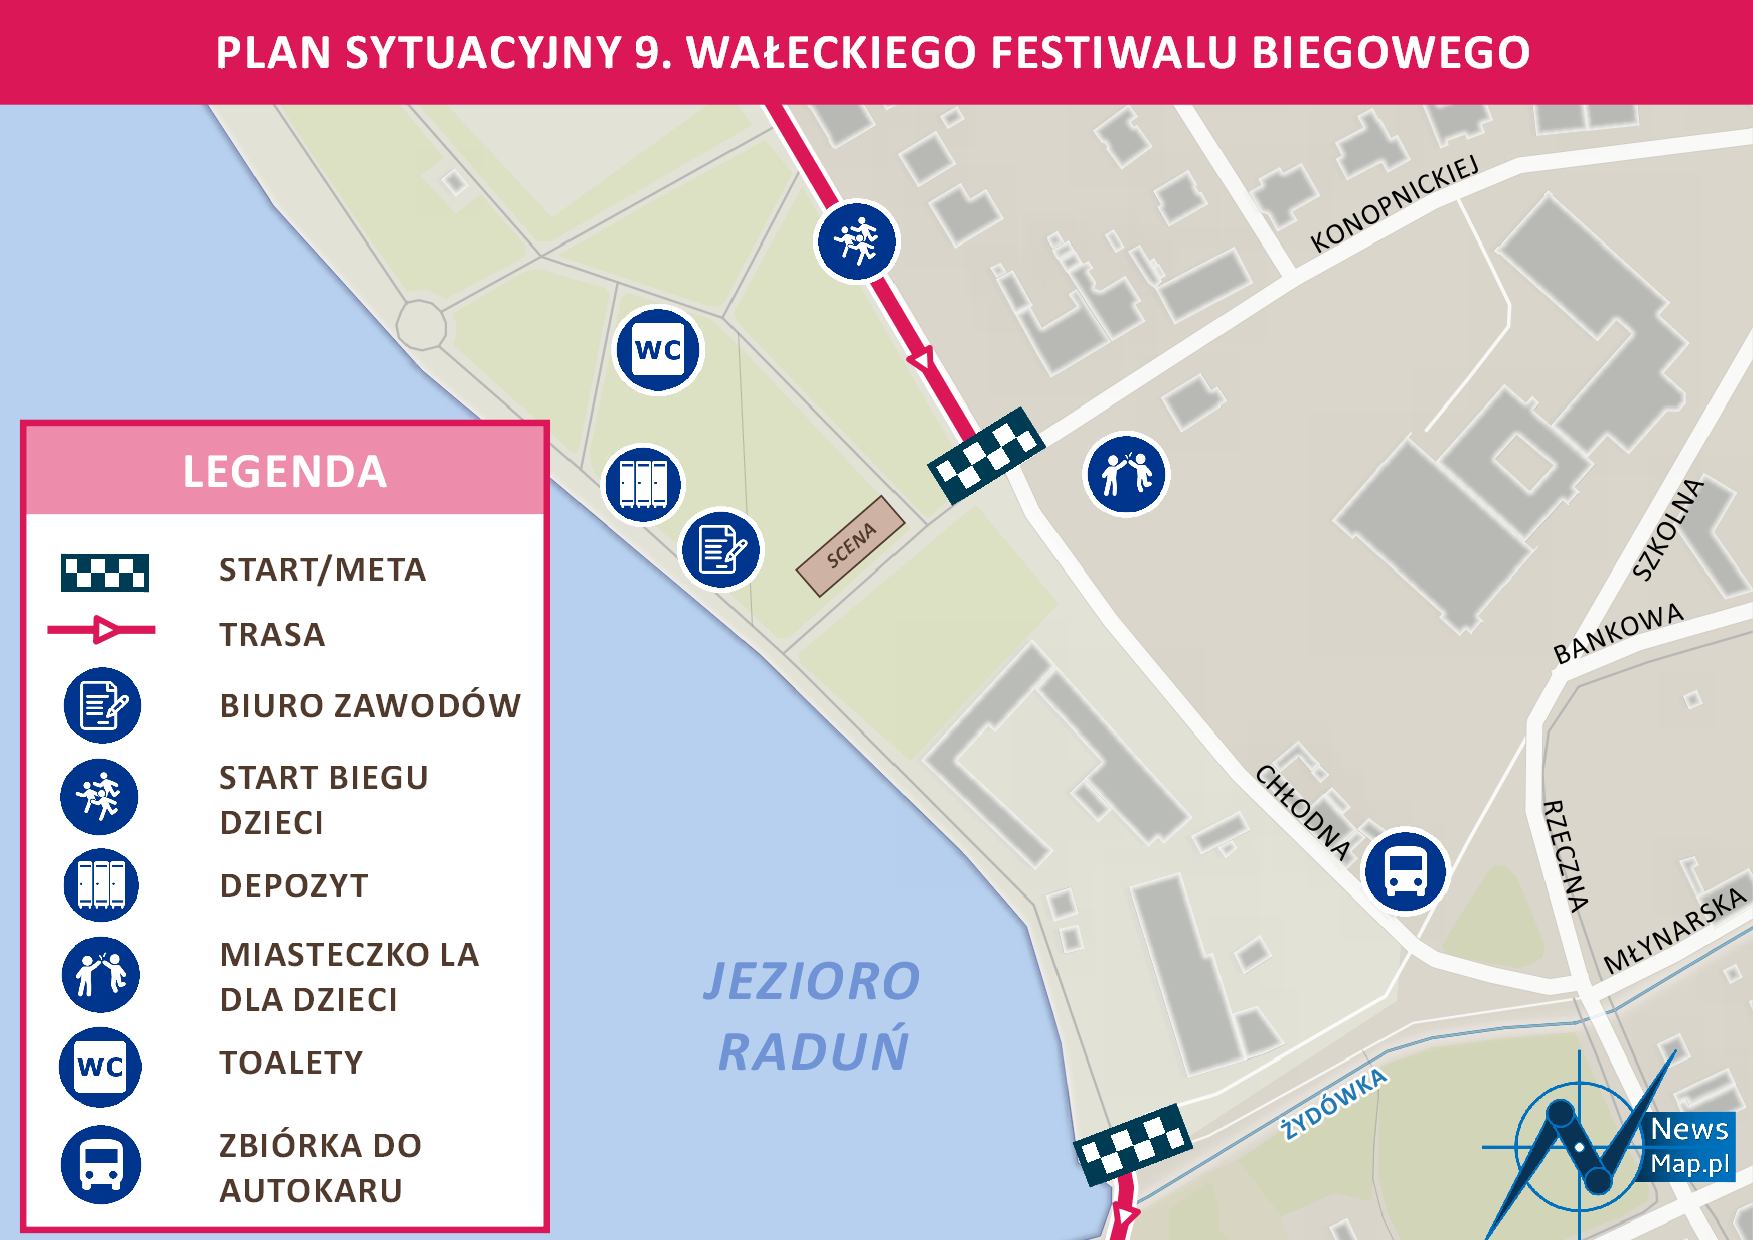 9. Wałecki Festiwal Biegowy - Plan sytuacyjny (online)